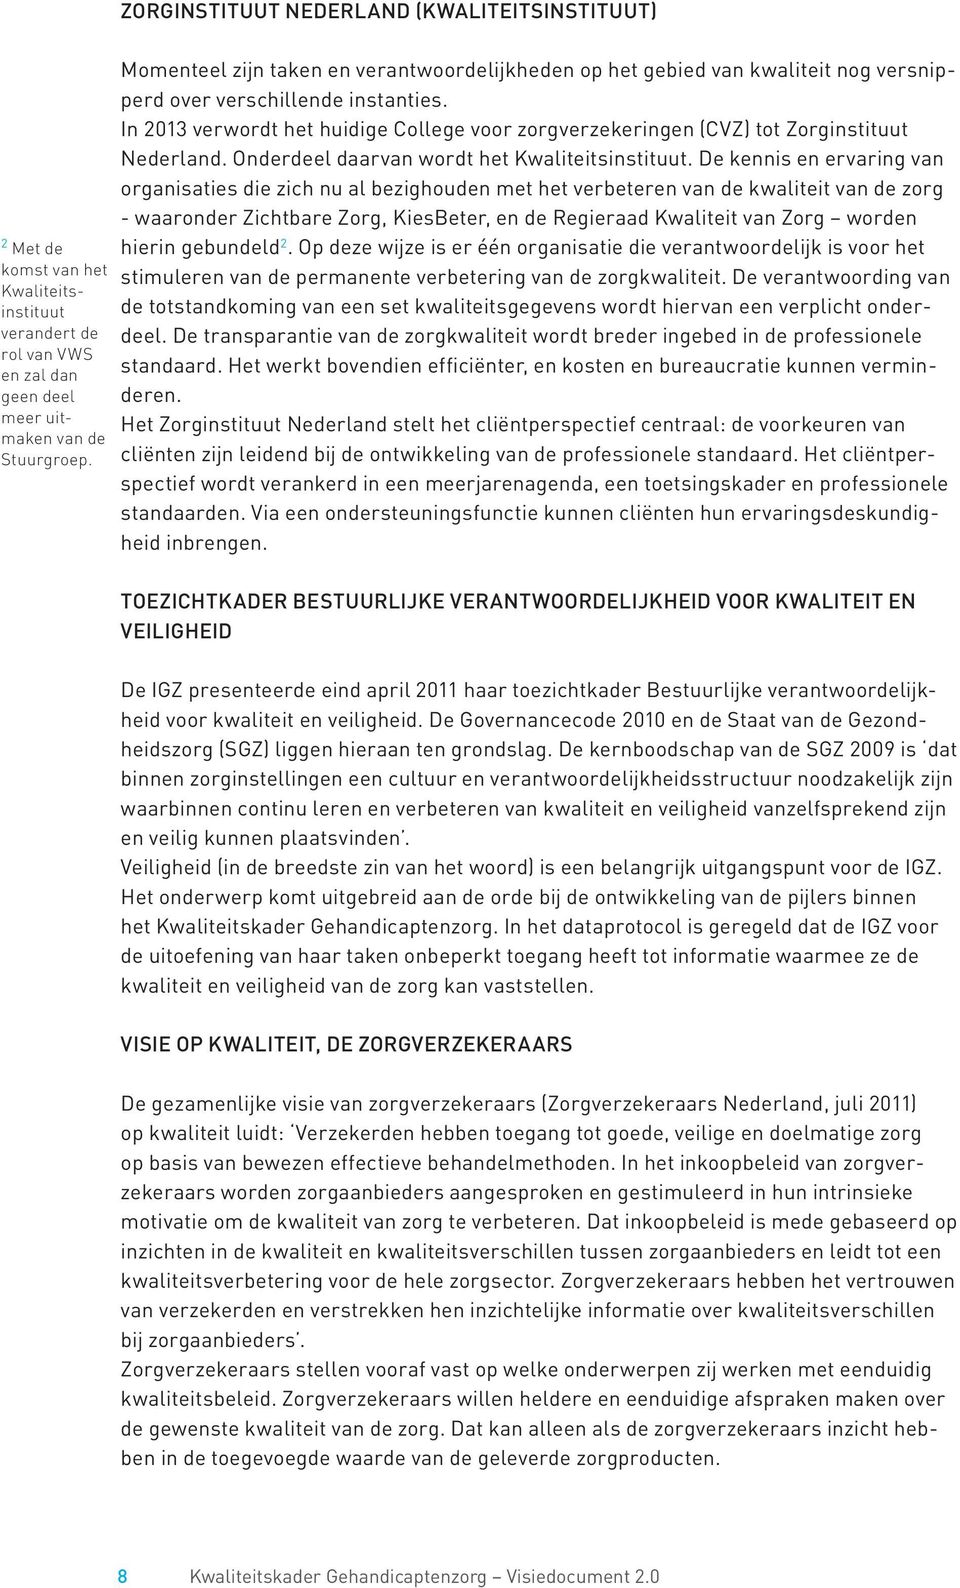 In 2013 verwordt het huidige College voor zorgverzekeringen (CVZ) tot Zorginstituut Nederland. Onderdeel daarvan wordt het Kwaliteitsinstituut.